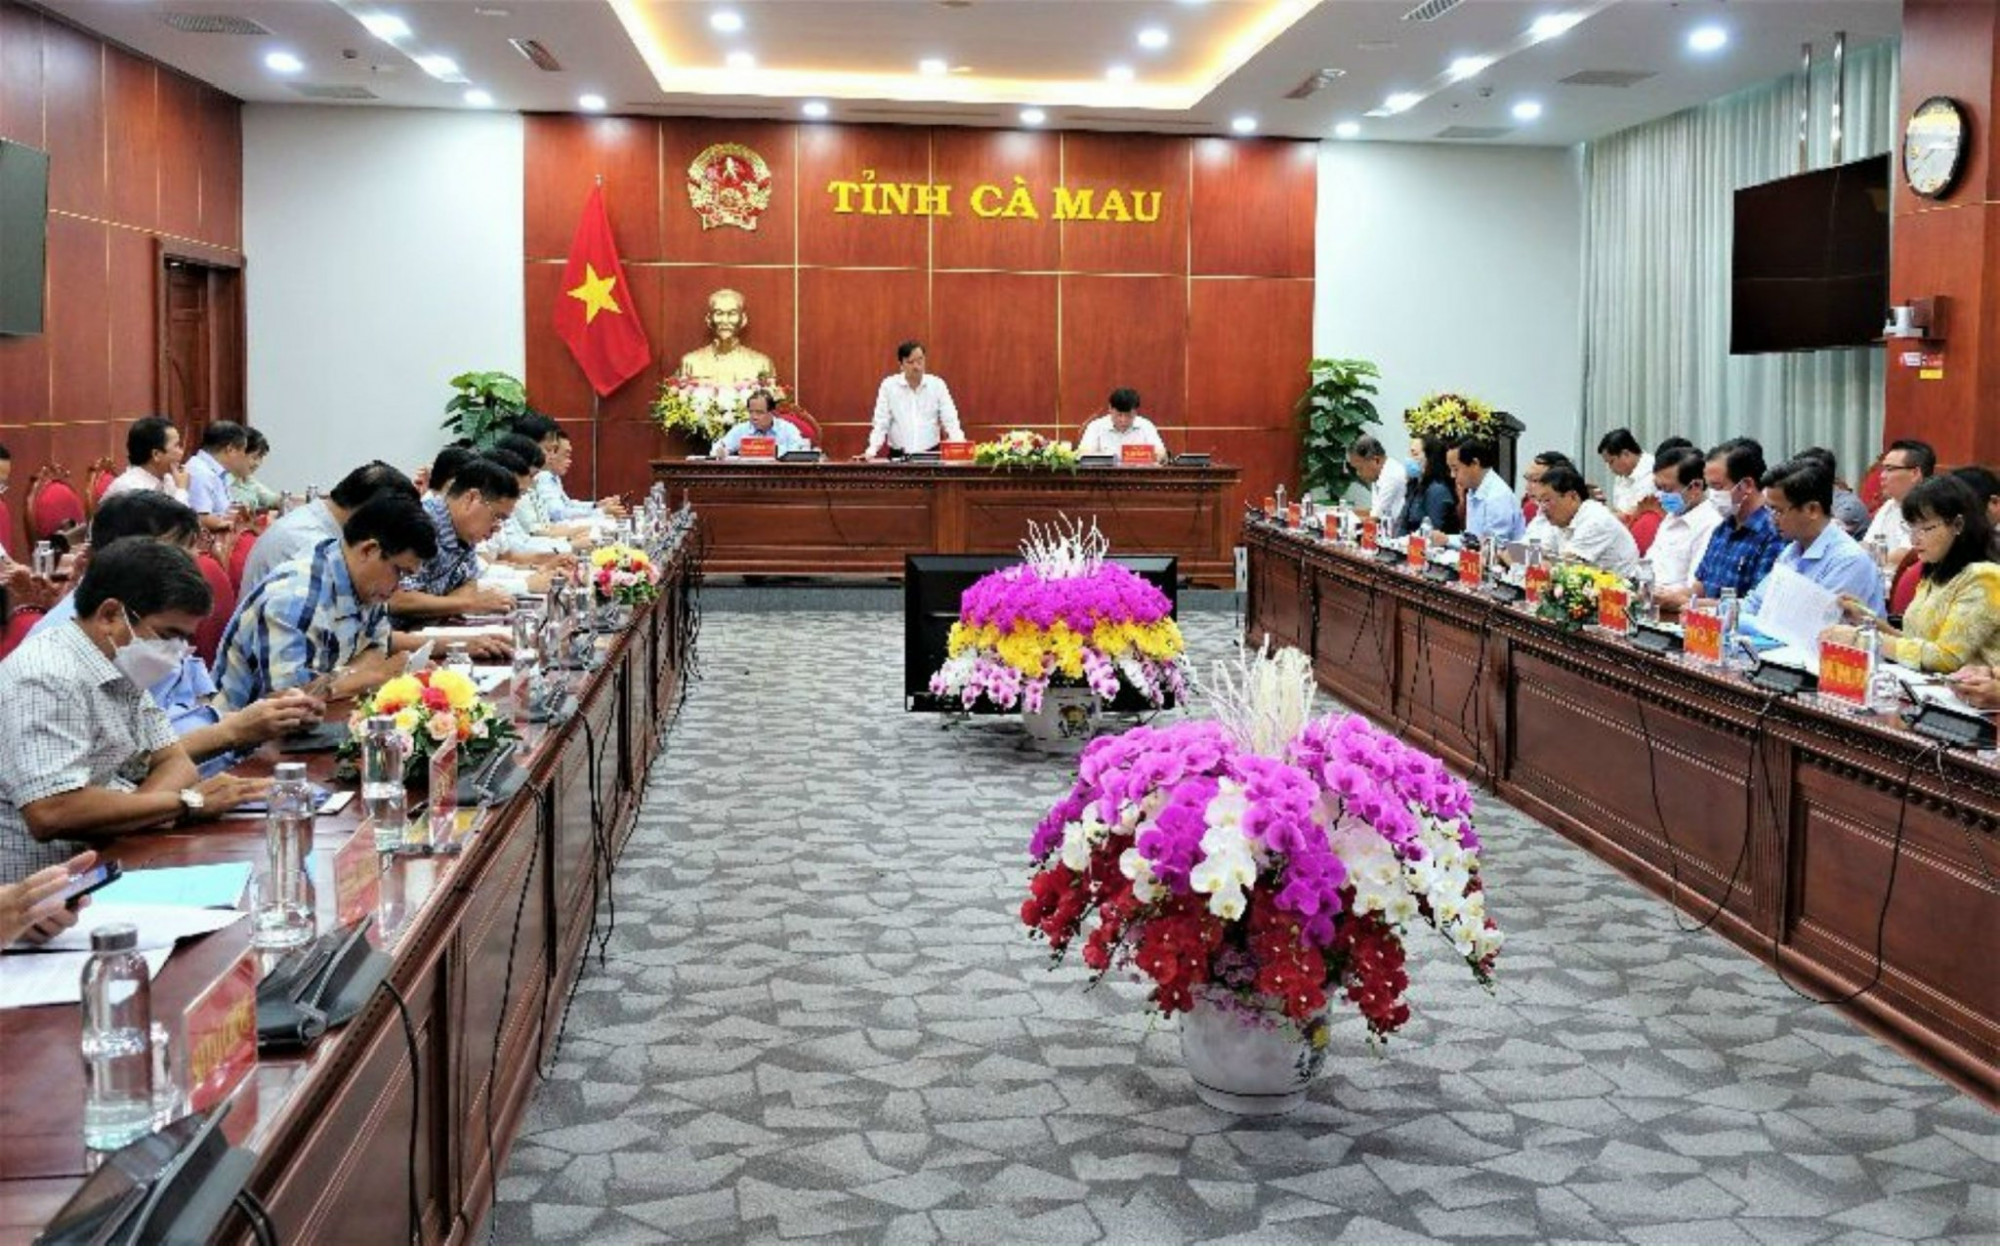 Phó bí thư Tỉnh ủy, Chủ tịch UBND tỉnh, Trưởng ban Chỉ đạo chuyển đổi số tỉnh Cà Mau Huỳnh Quốc Việt (đứng) phát biểu chỉ đạo tại cuộc họp